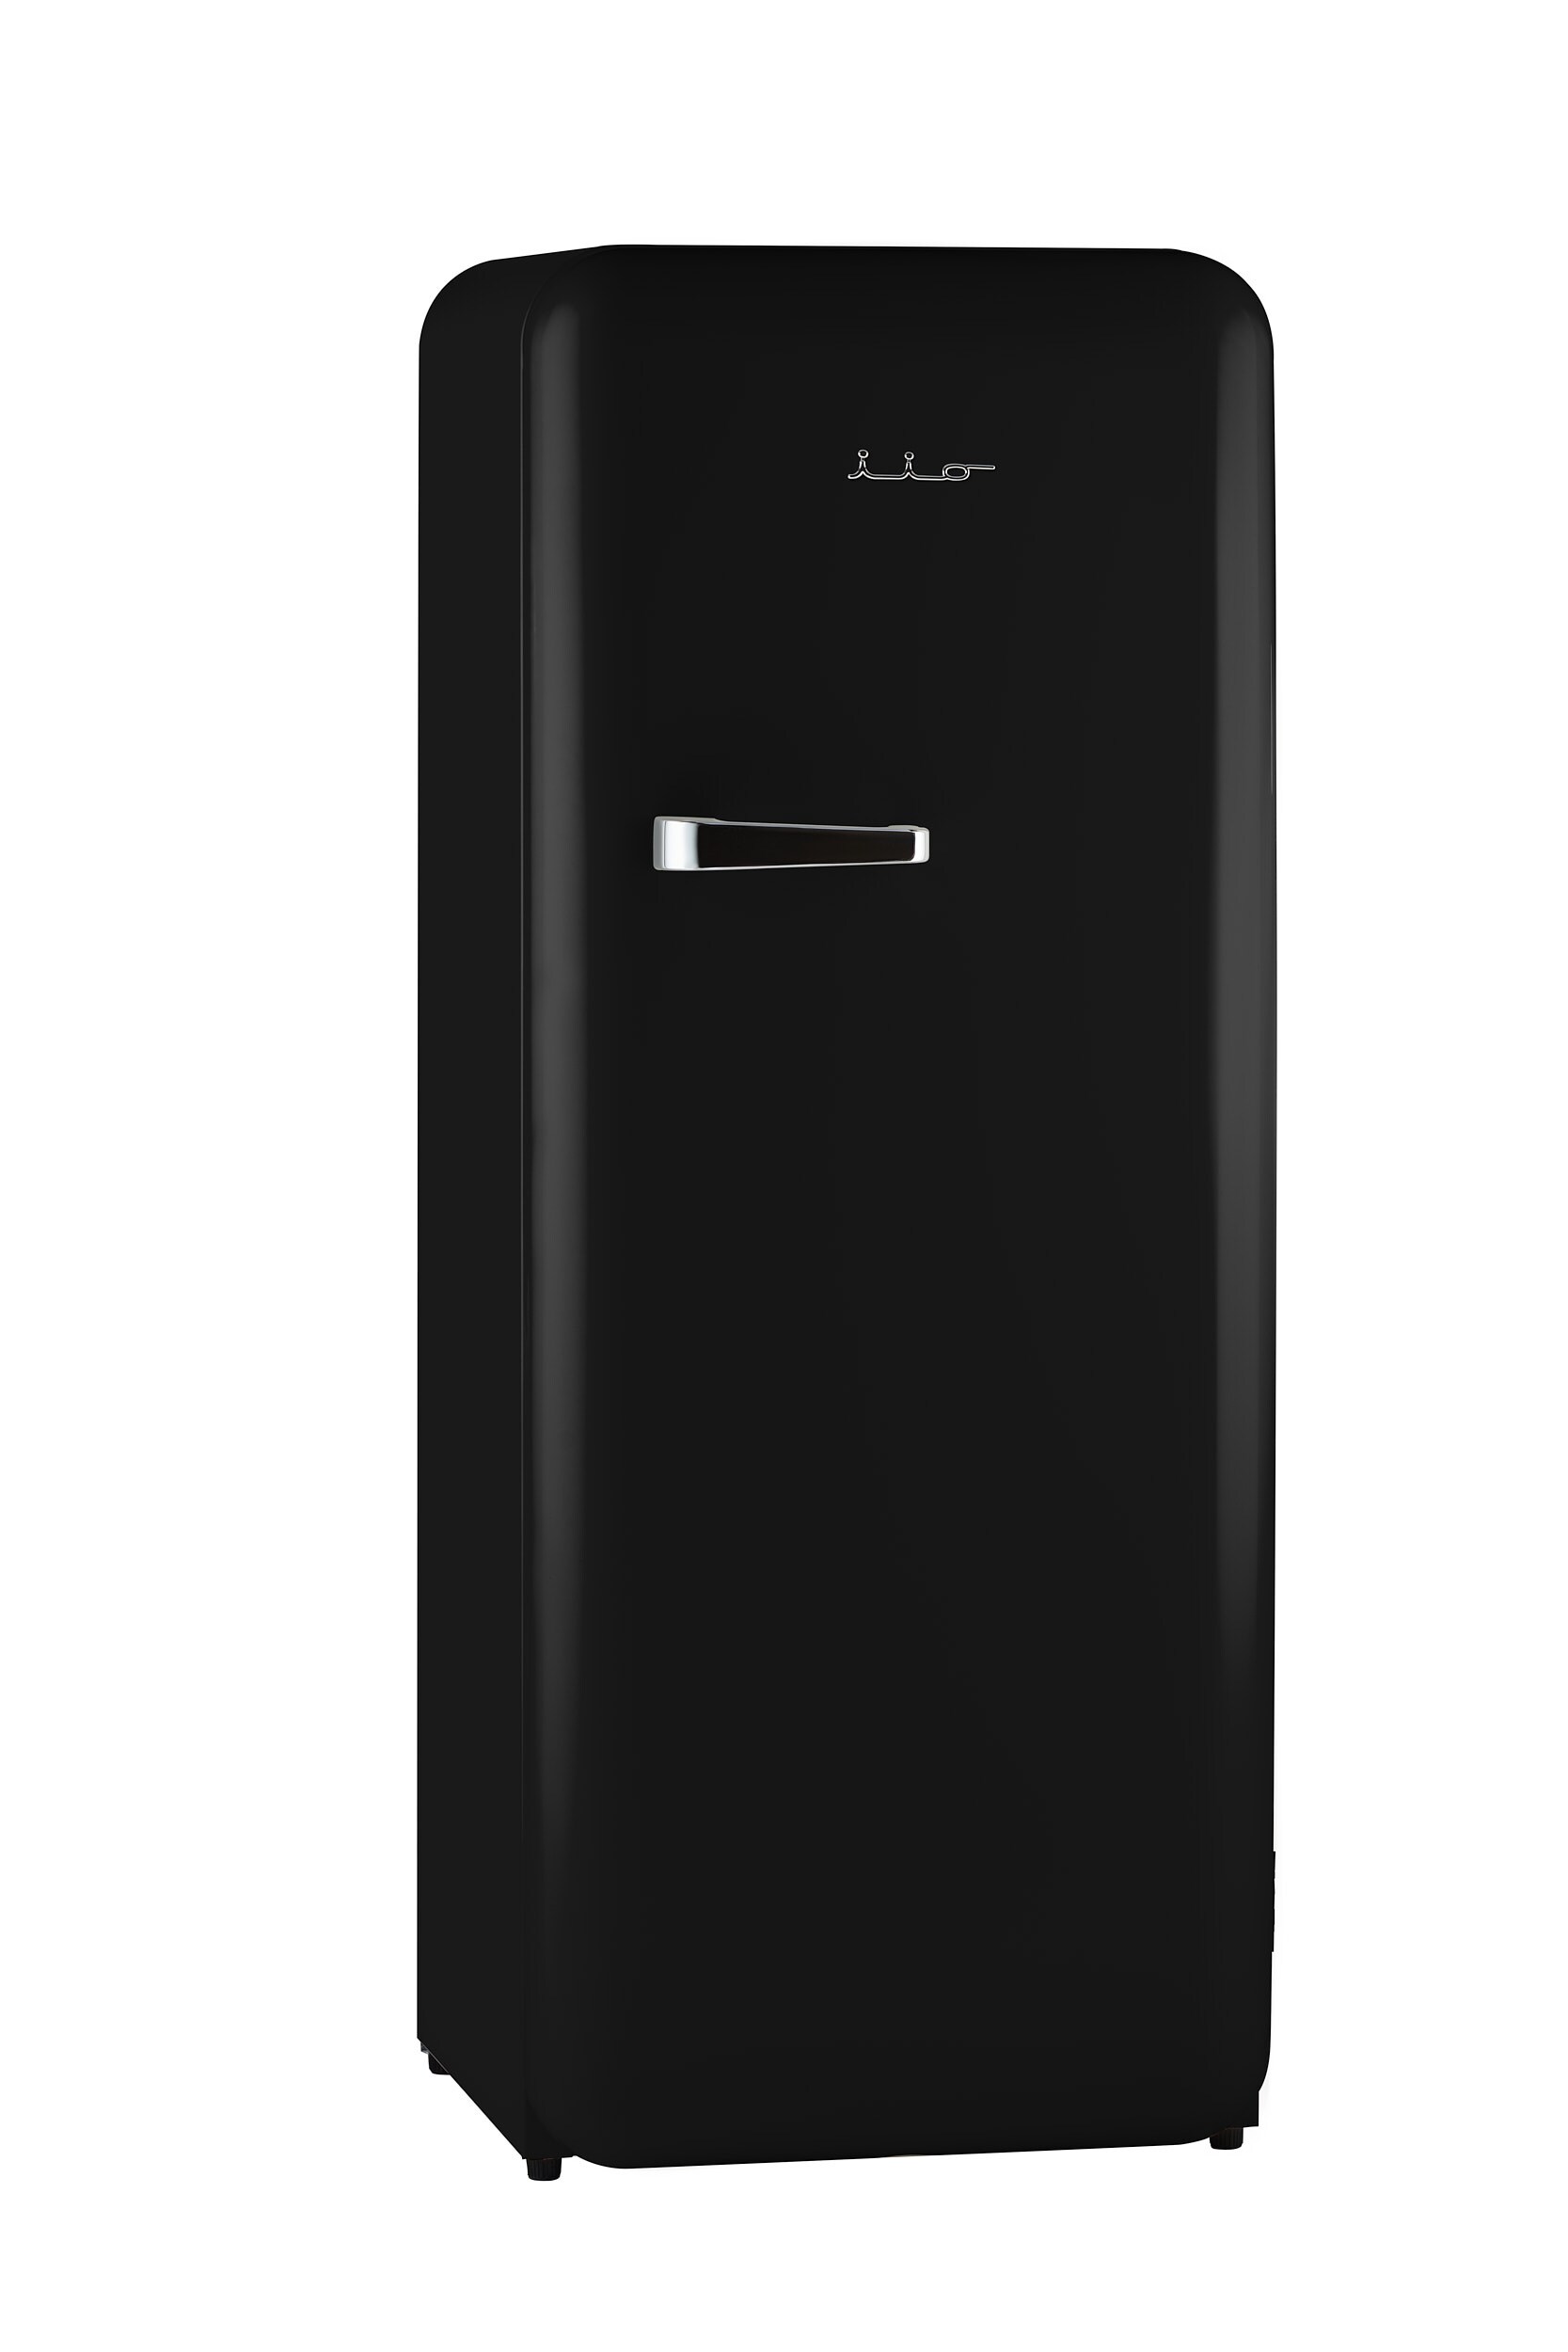 martelen Wiskundige metalen iio Retro VR1 10-cu ft Top-Freezer Refrigerator (Jet Black) in the  Top-Freezer Refrigerators department at Lowes.com